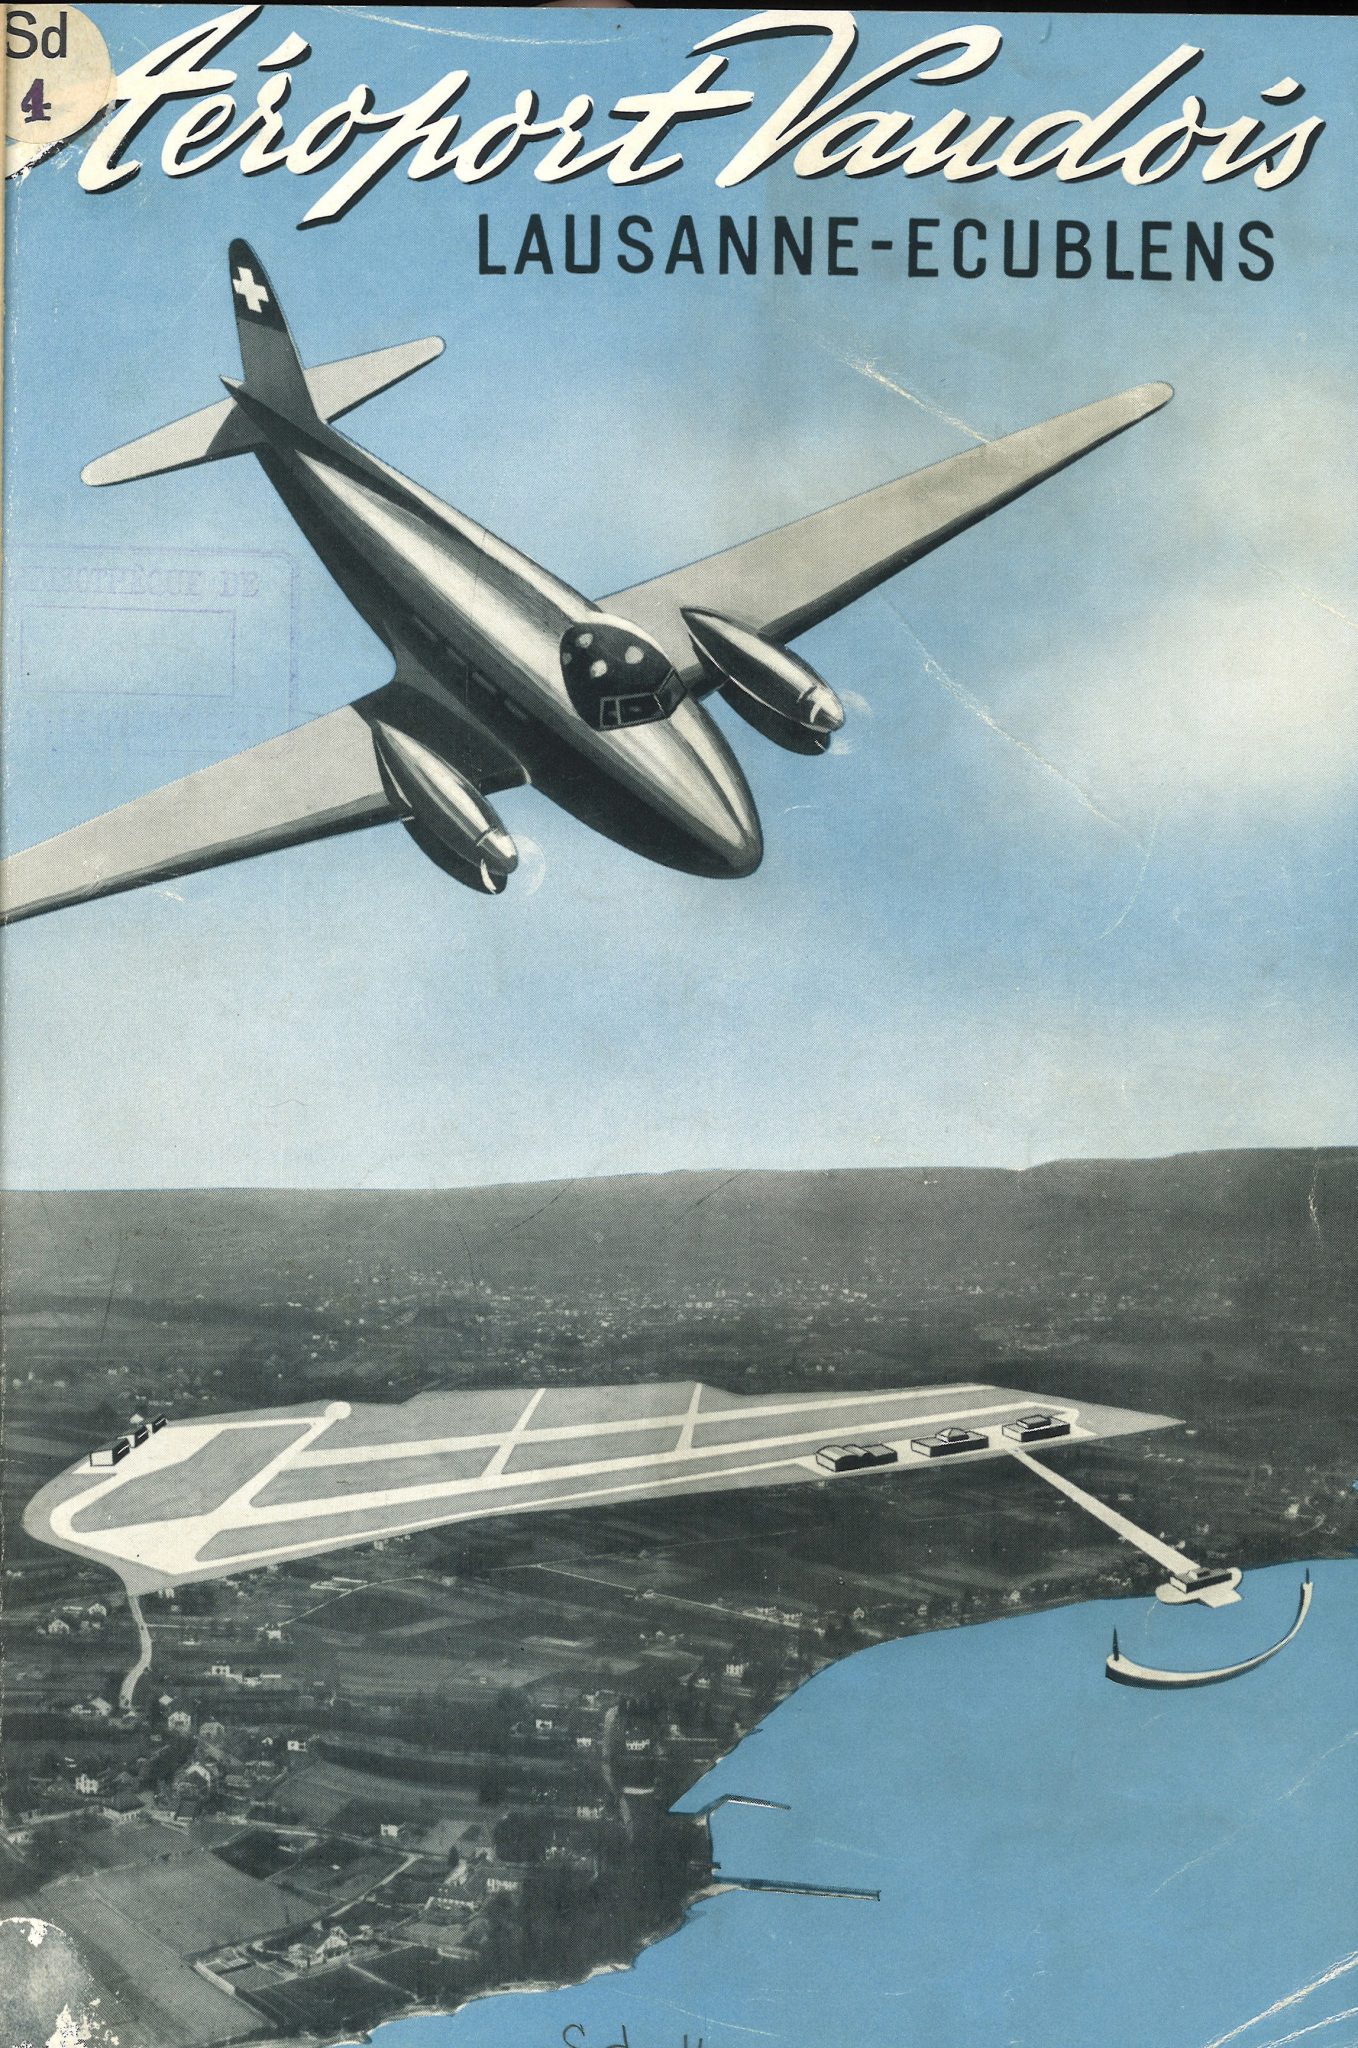 Auteur anonyme, Première de couverture du livre Aéroport vaudois, 1945